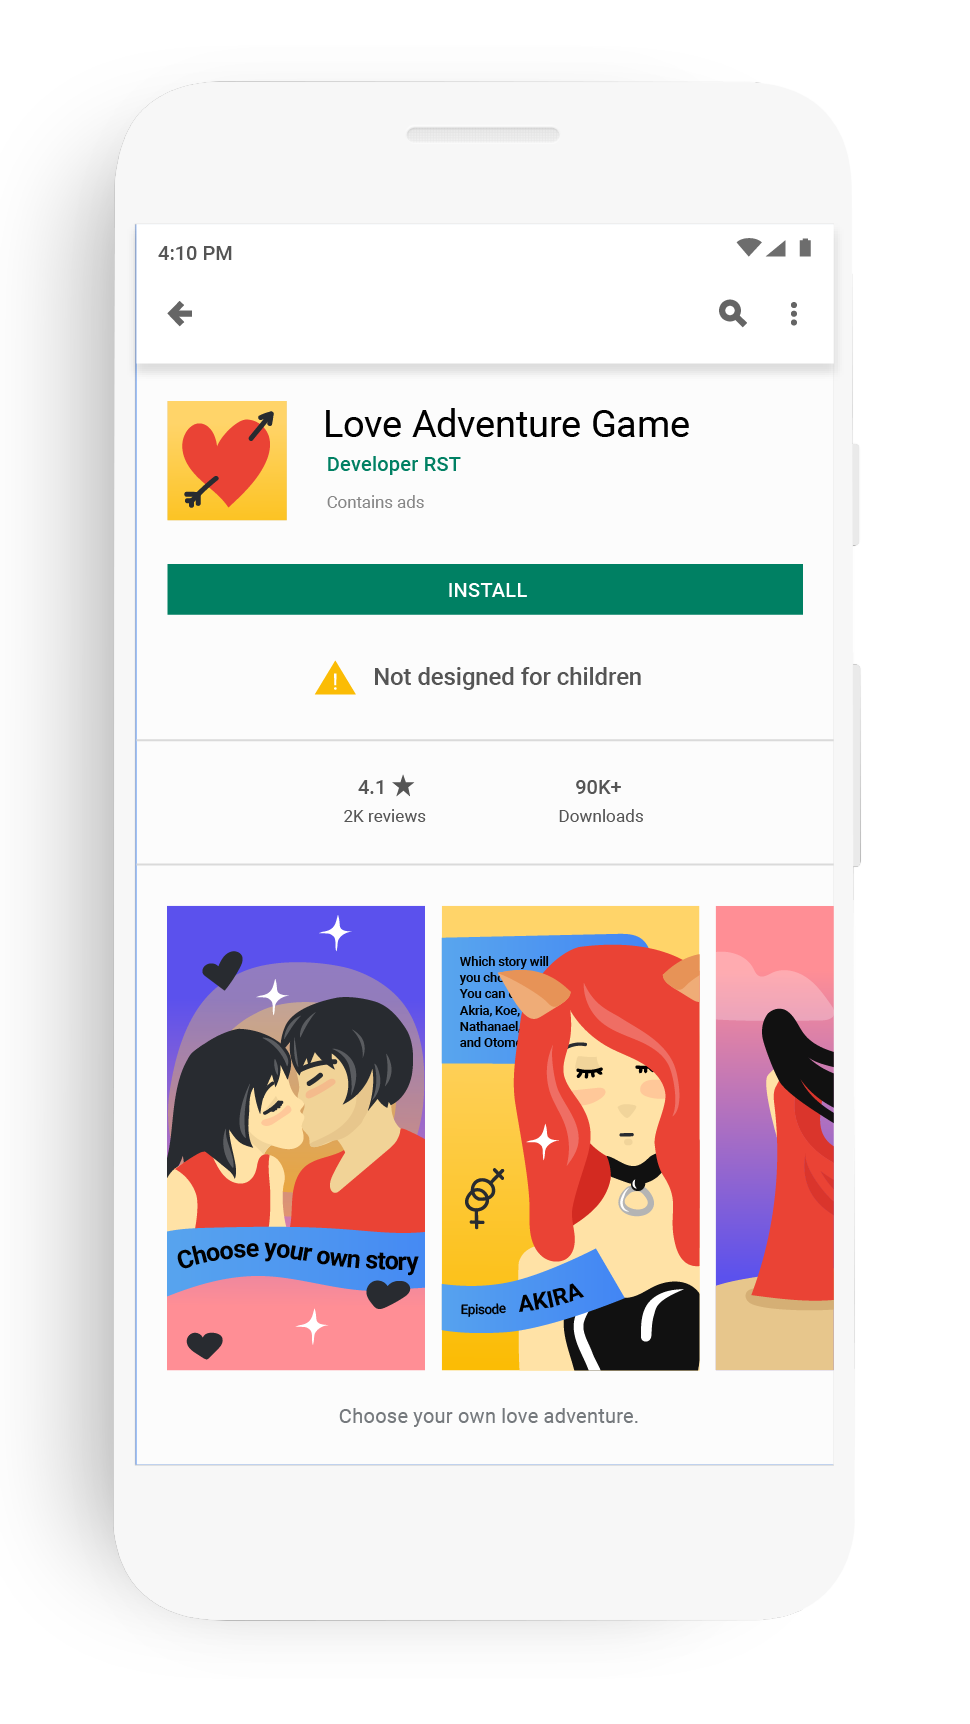 Jogos educativos de crianças ➡ Google Play Review ✓ AppFollow